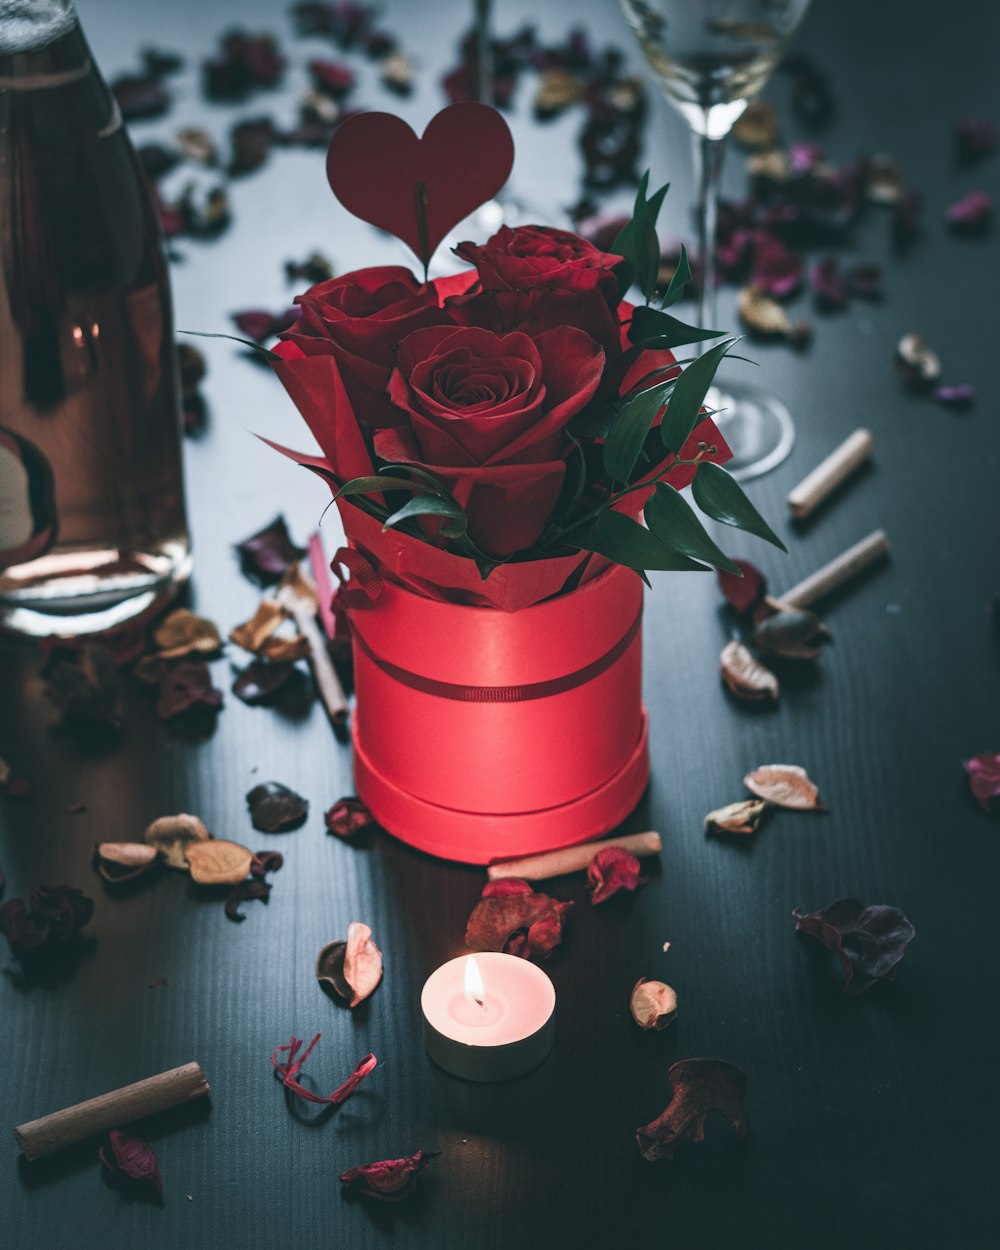 빨간 세라믹 꽃병에 빨간 장미